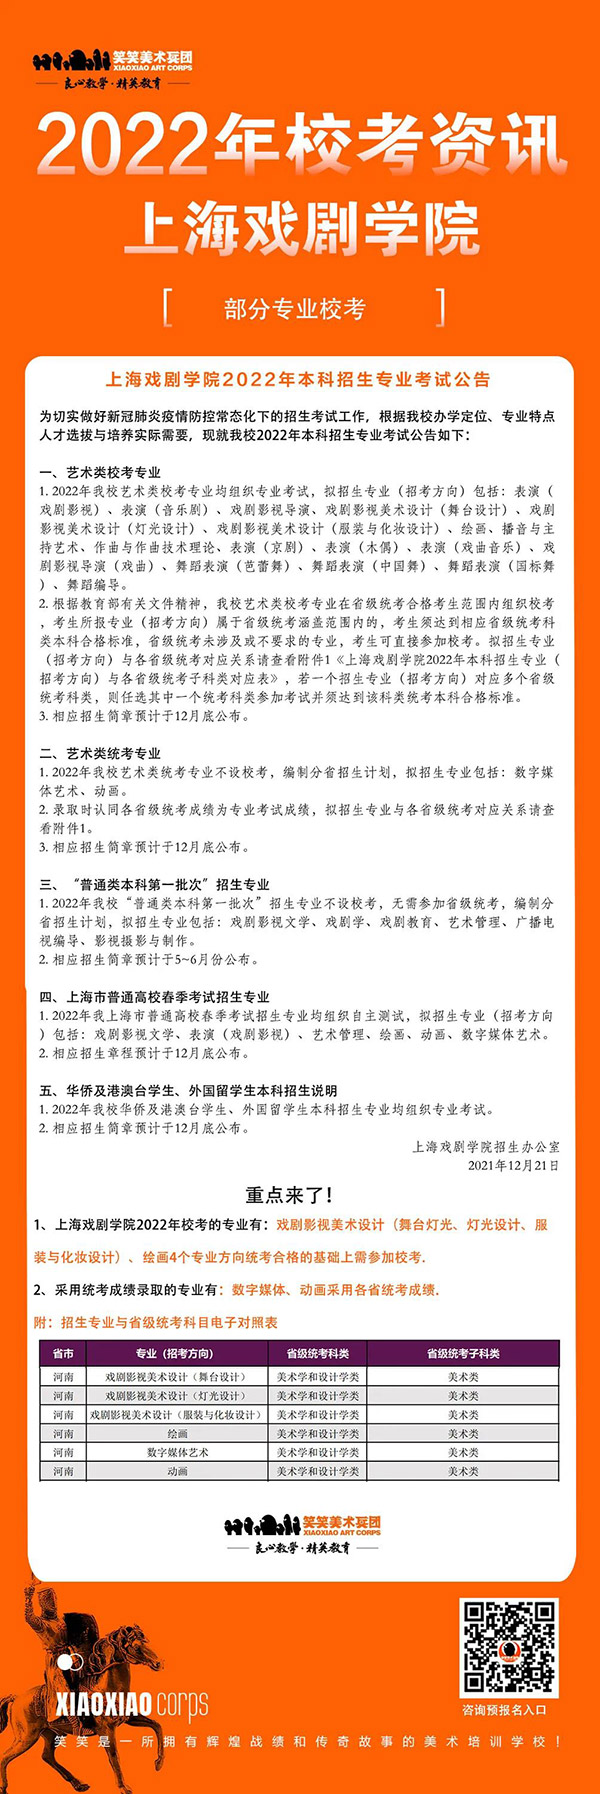 2022年上海戏剧学院部分专业校考公告